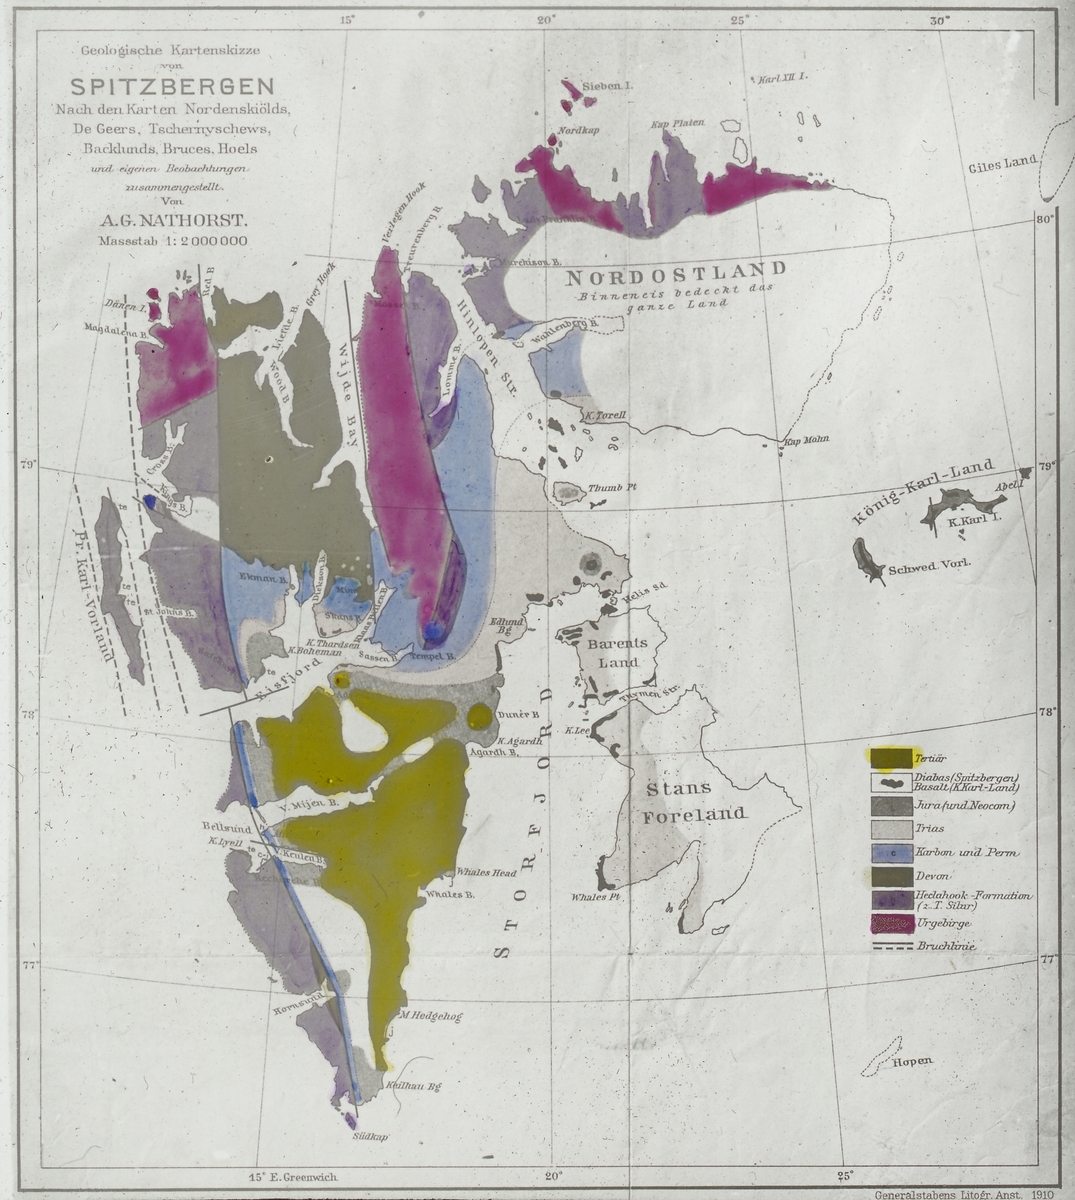 Kart over geologiske epoker. Laget av A.G. Nathorst. Tekst med bildet: Karter. Spitsbergen. Geologisk oversikt.